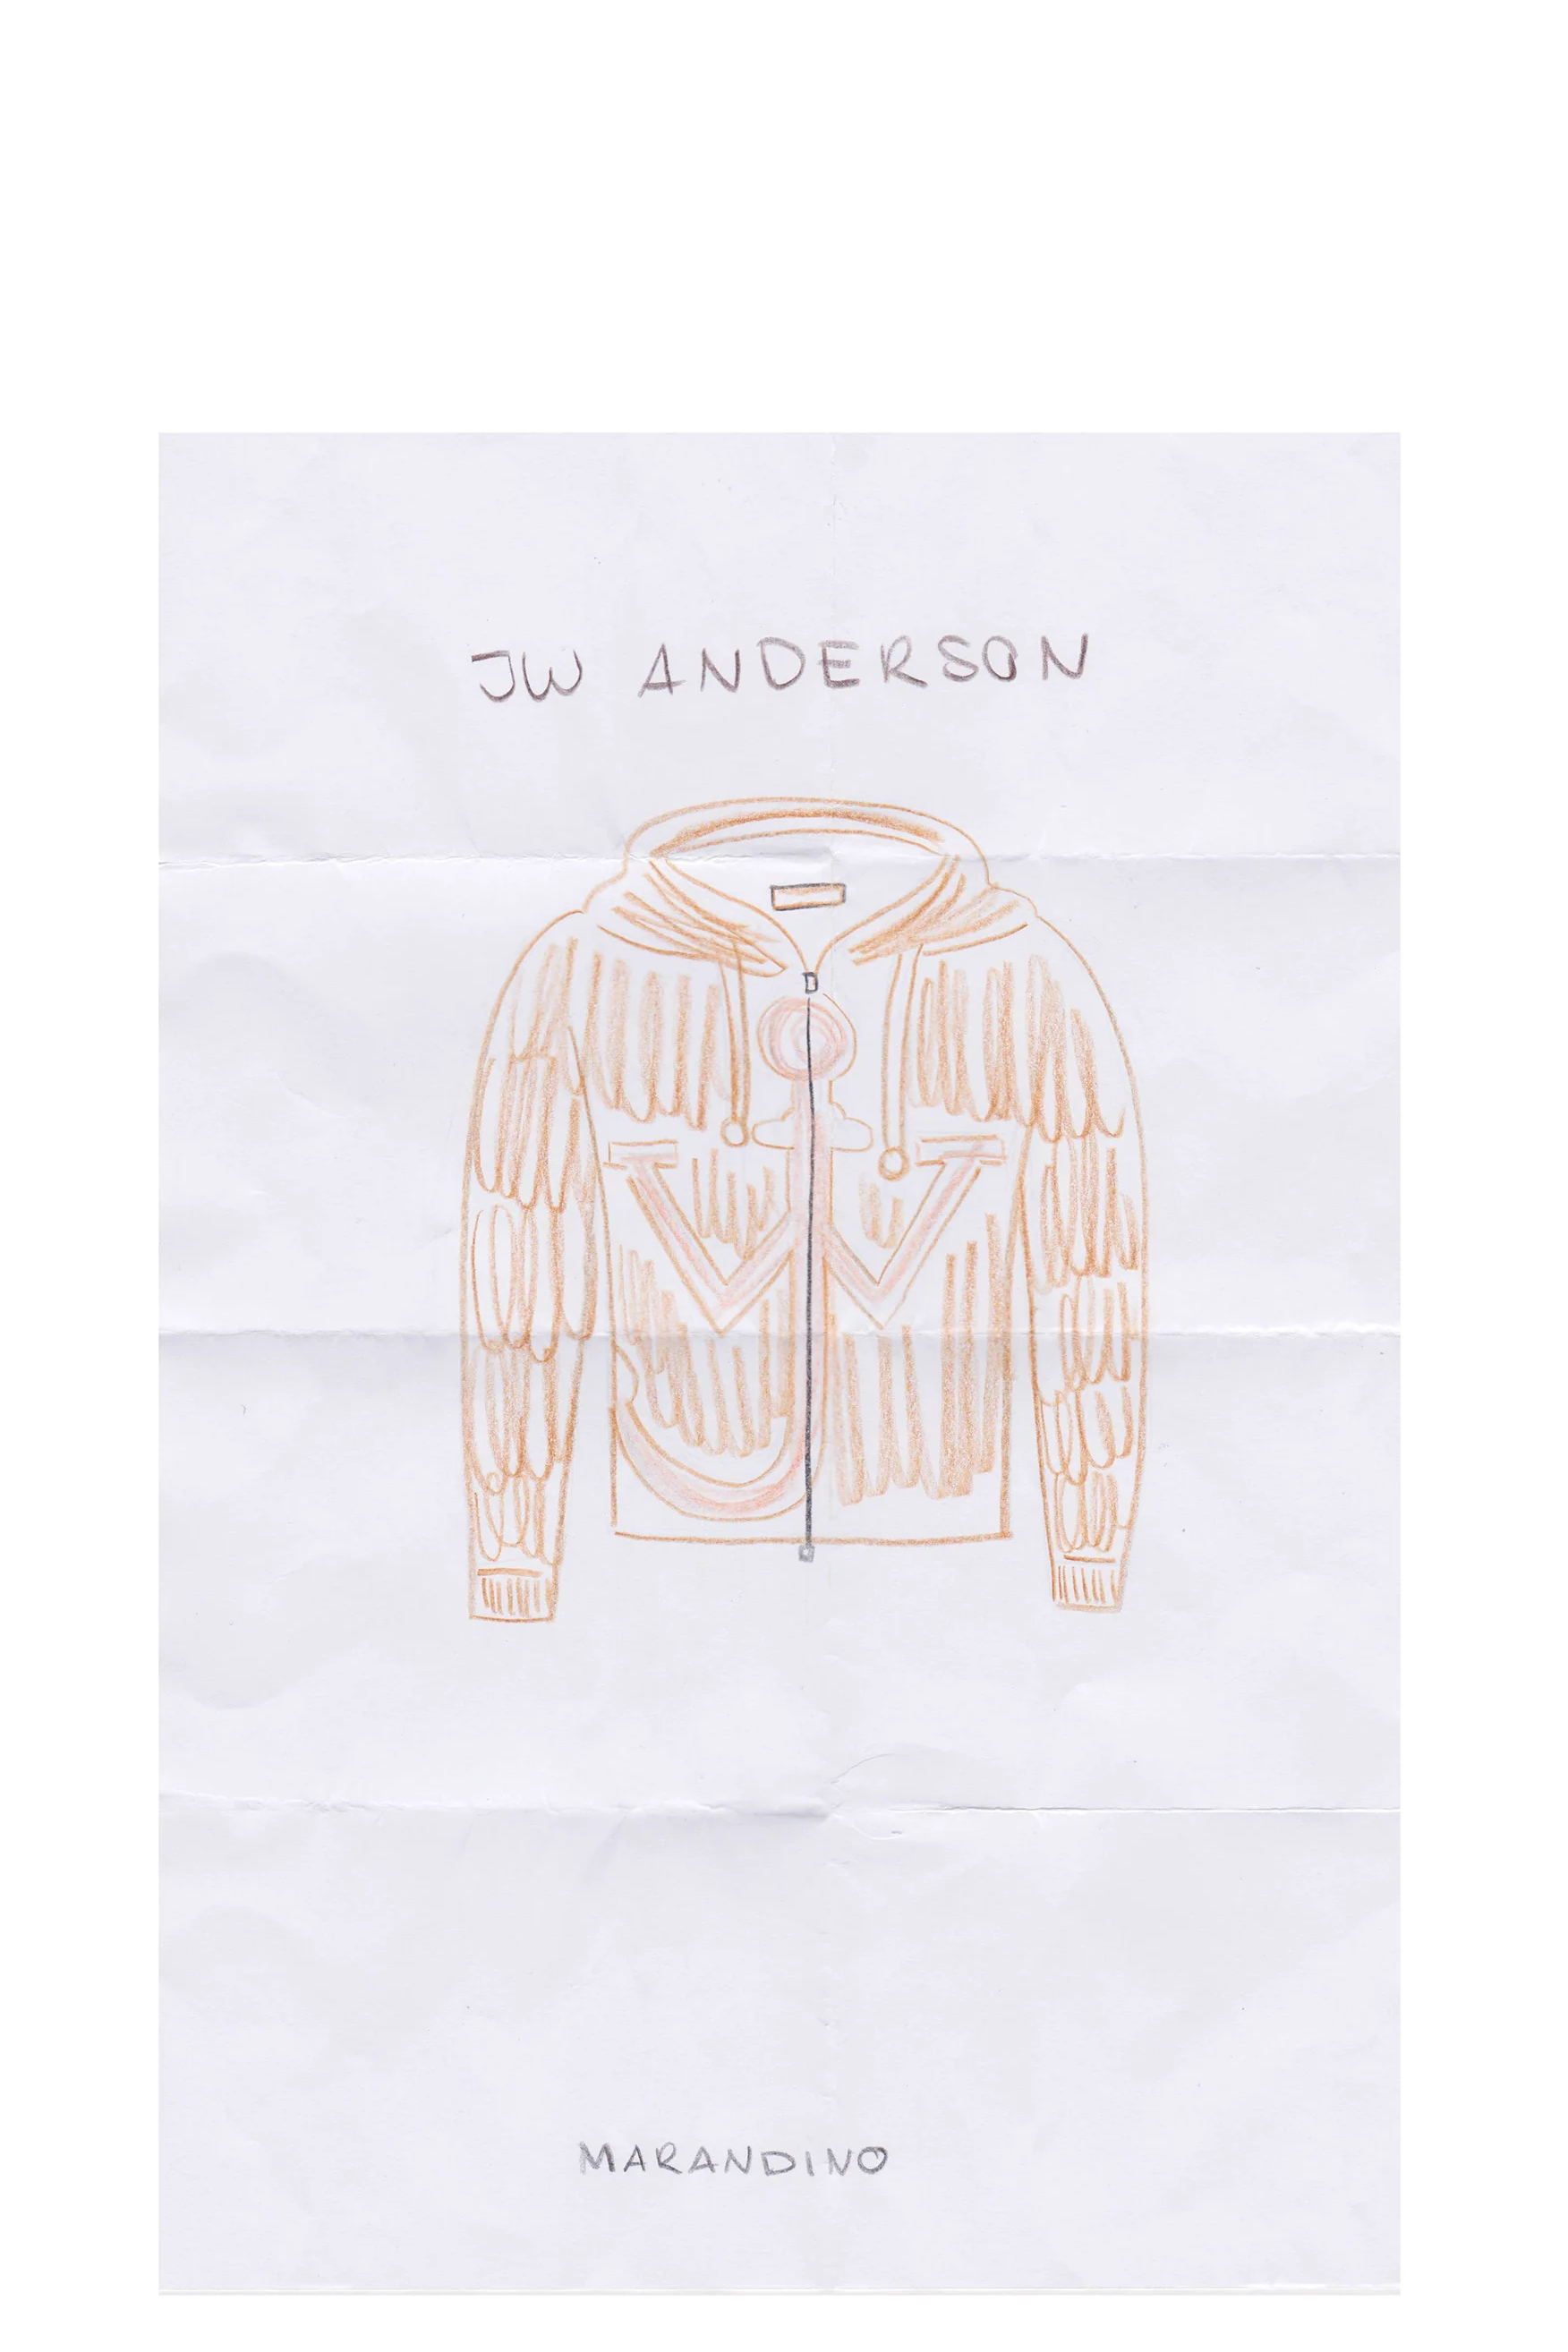 Eine Zeichnung einer Braunen JW Jacke auf einem Blatt Papier